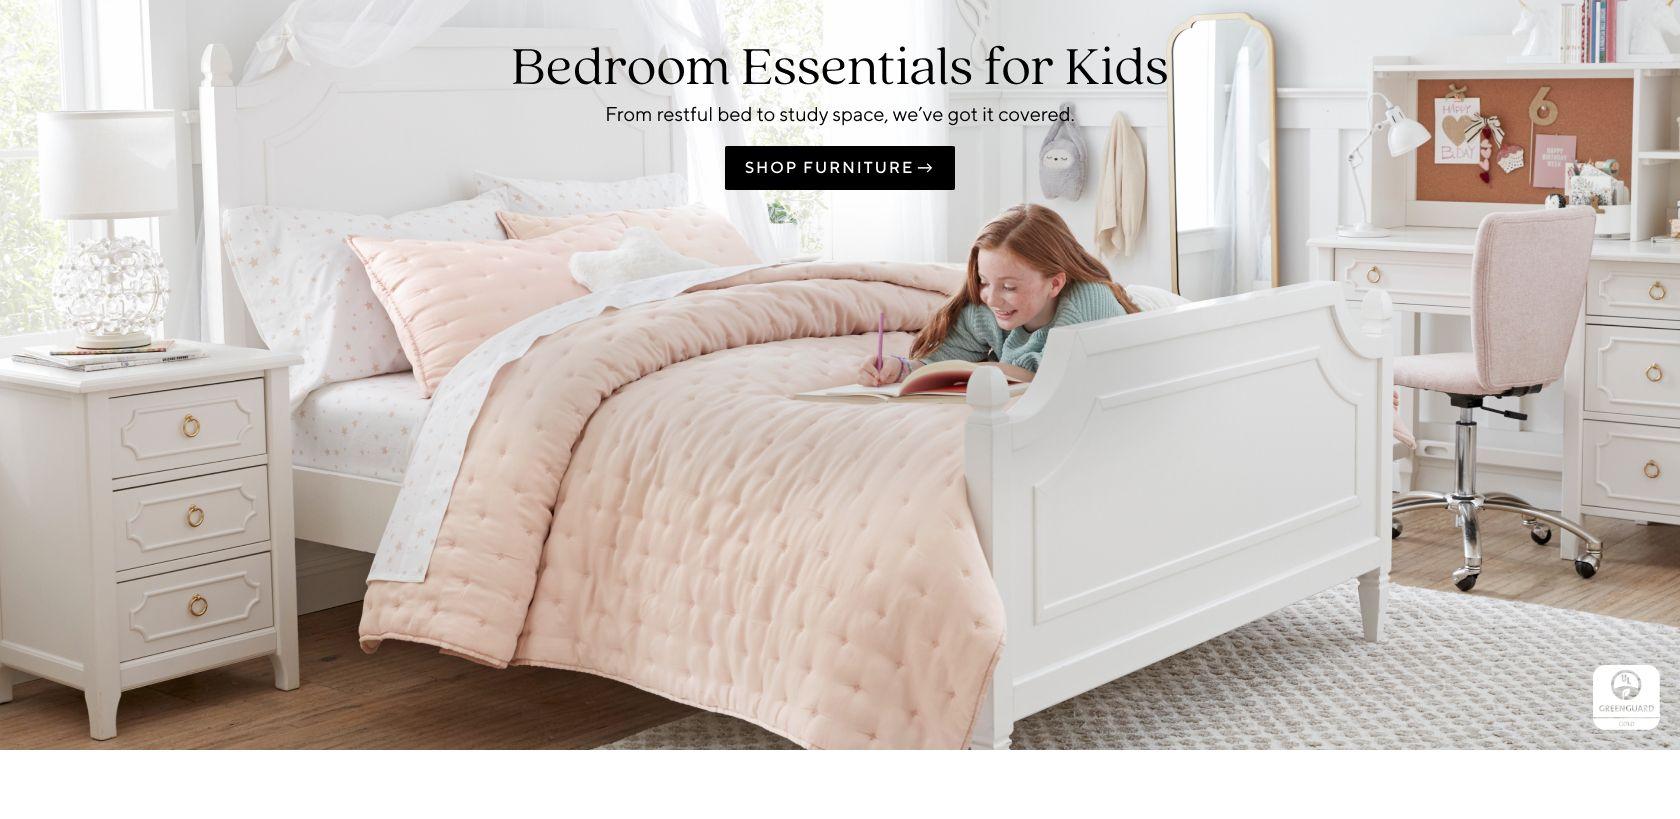 Kids' Bedroom Essentials